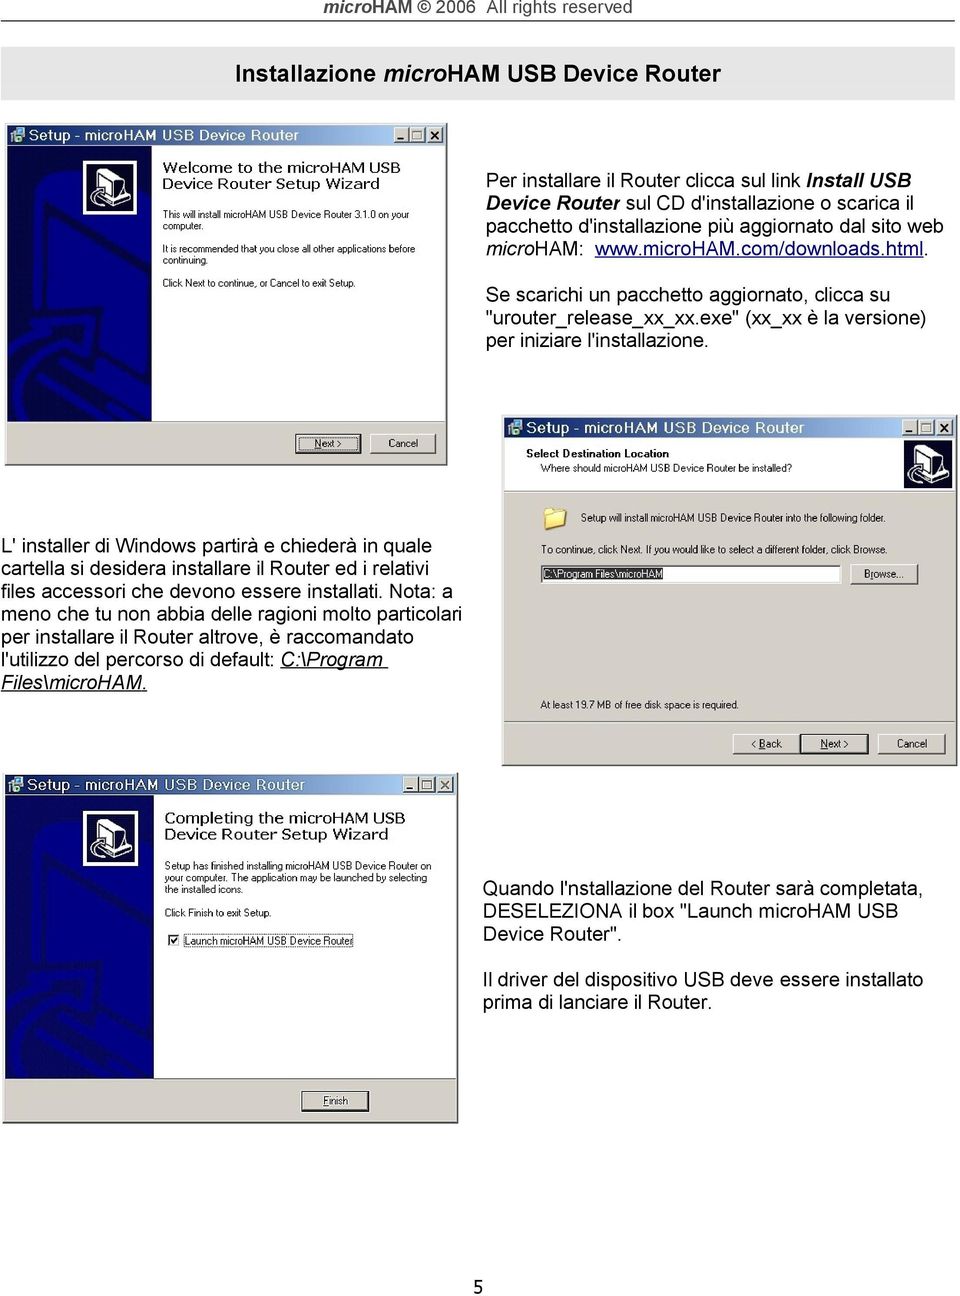 L' installer di Windows partirà e chiederà in quale cartella si desidera installare il Router ed i relativi files accessori che devono essere installati.